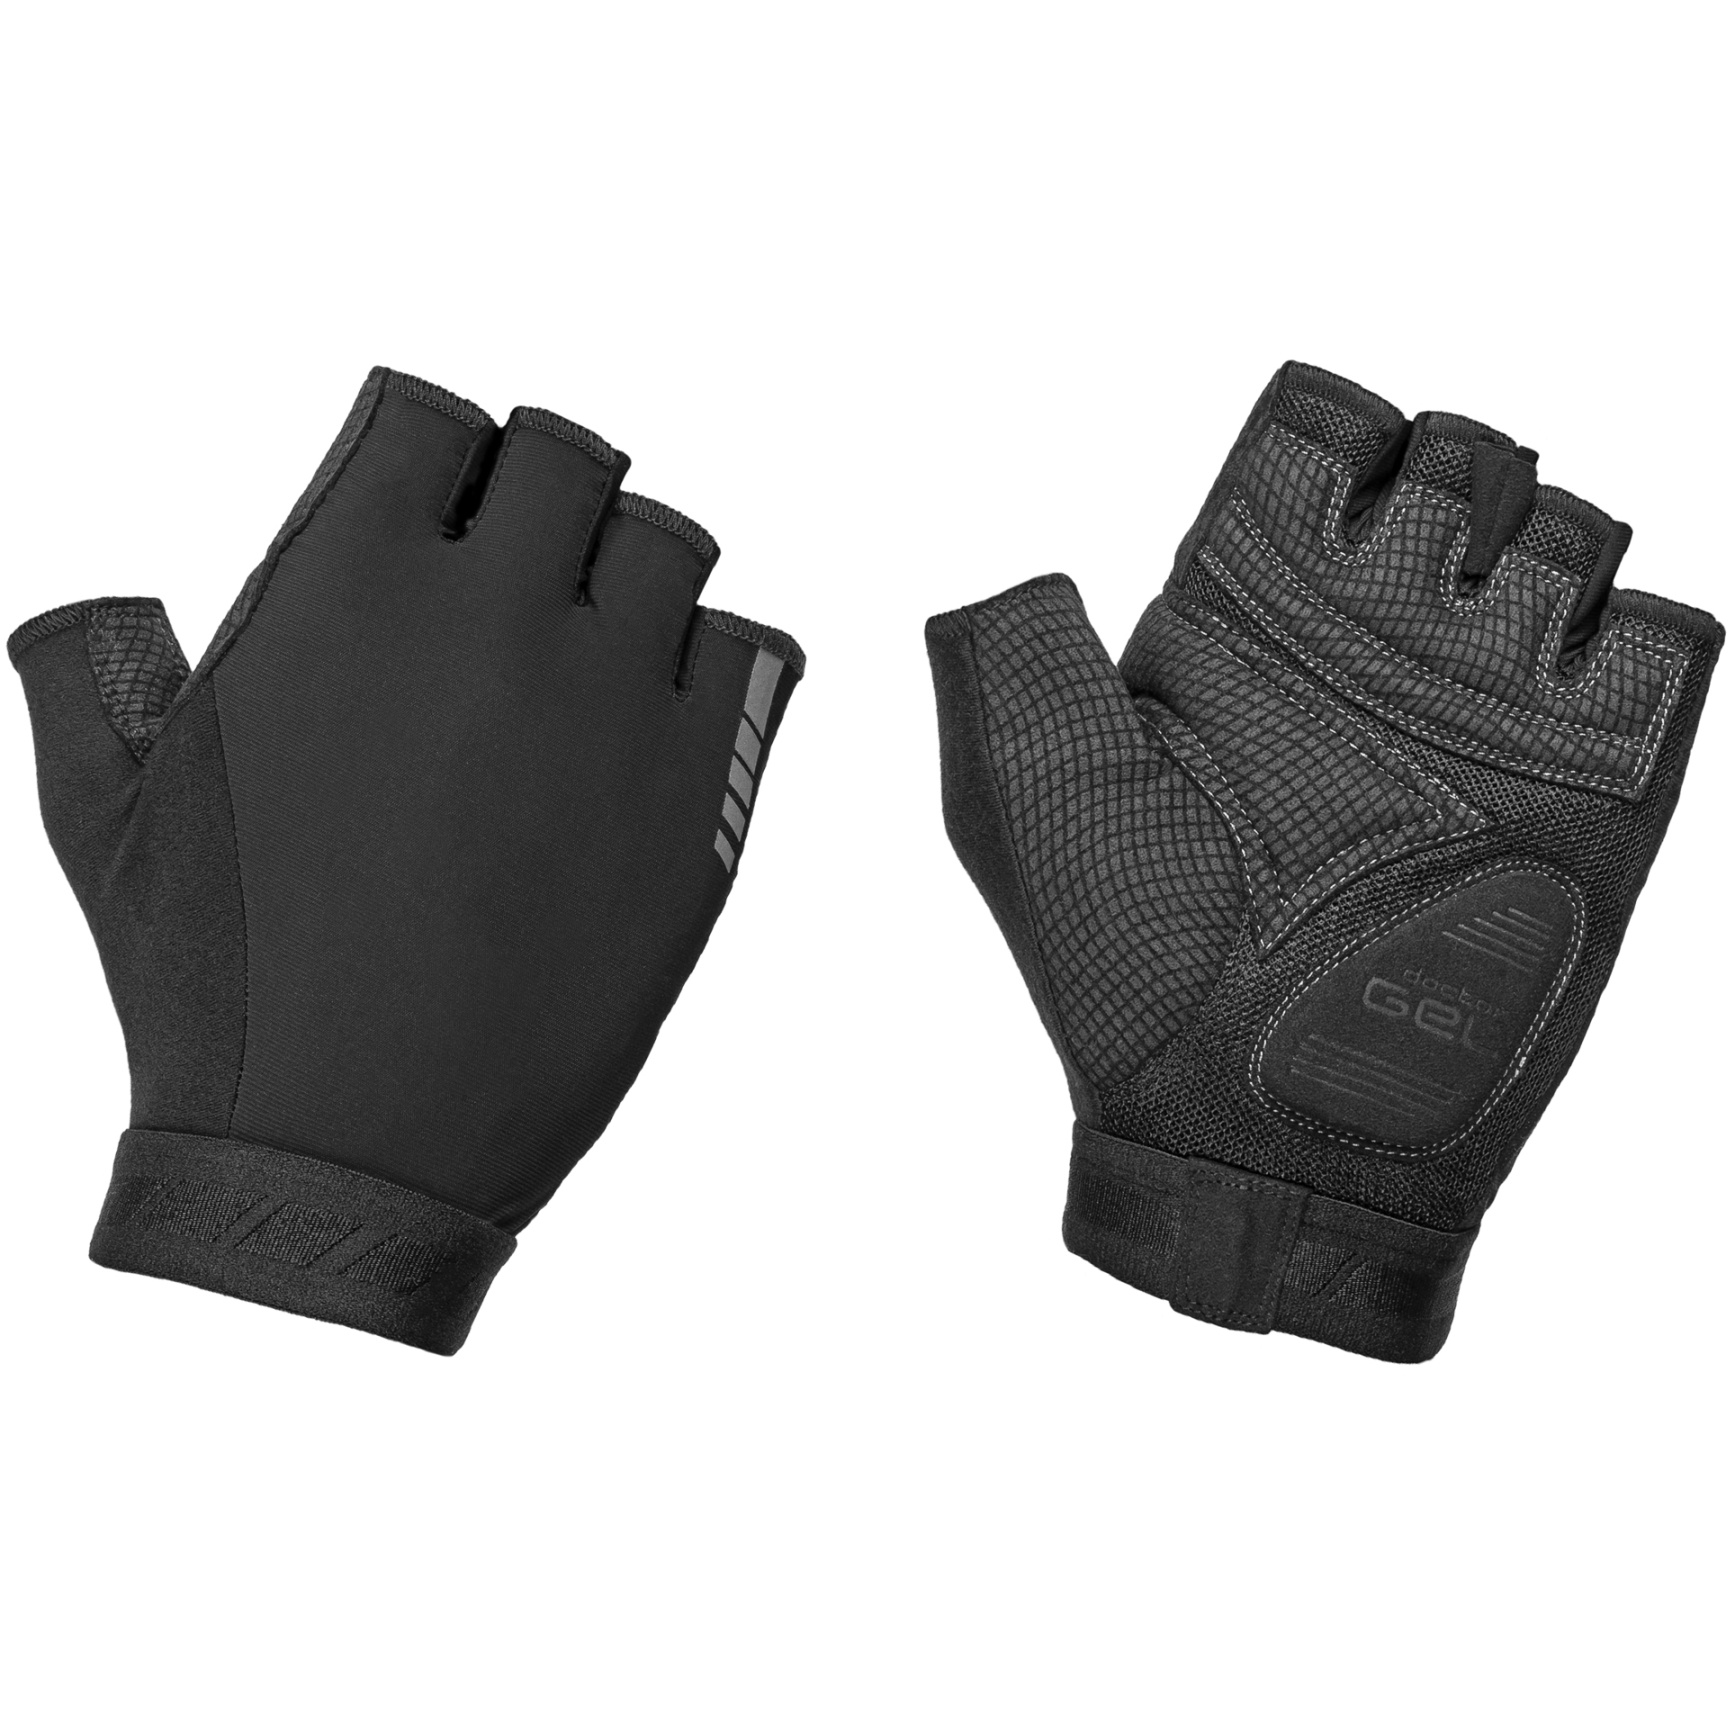 Produktbild von GripGrab WorldCup Gepolstertee Kurzfinger Handschuhe 2 - Black